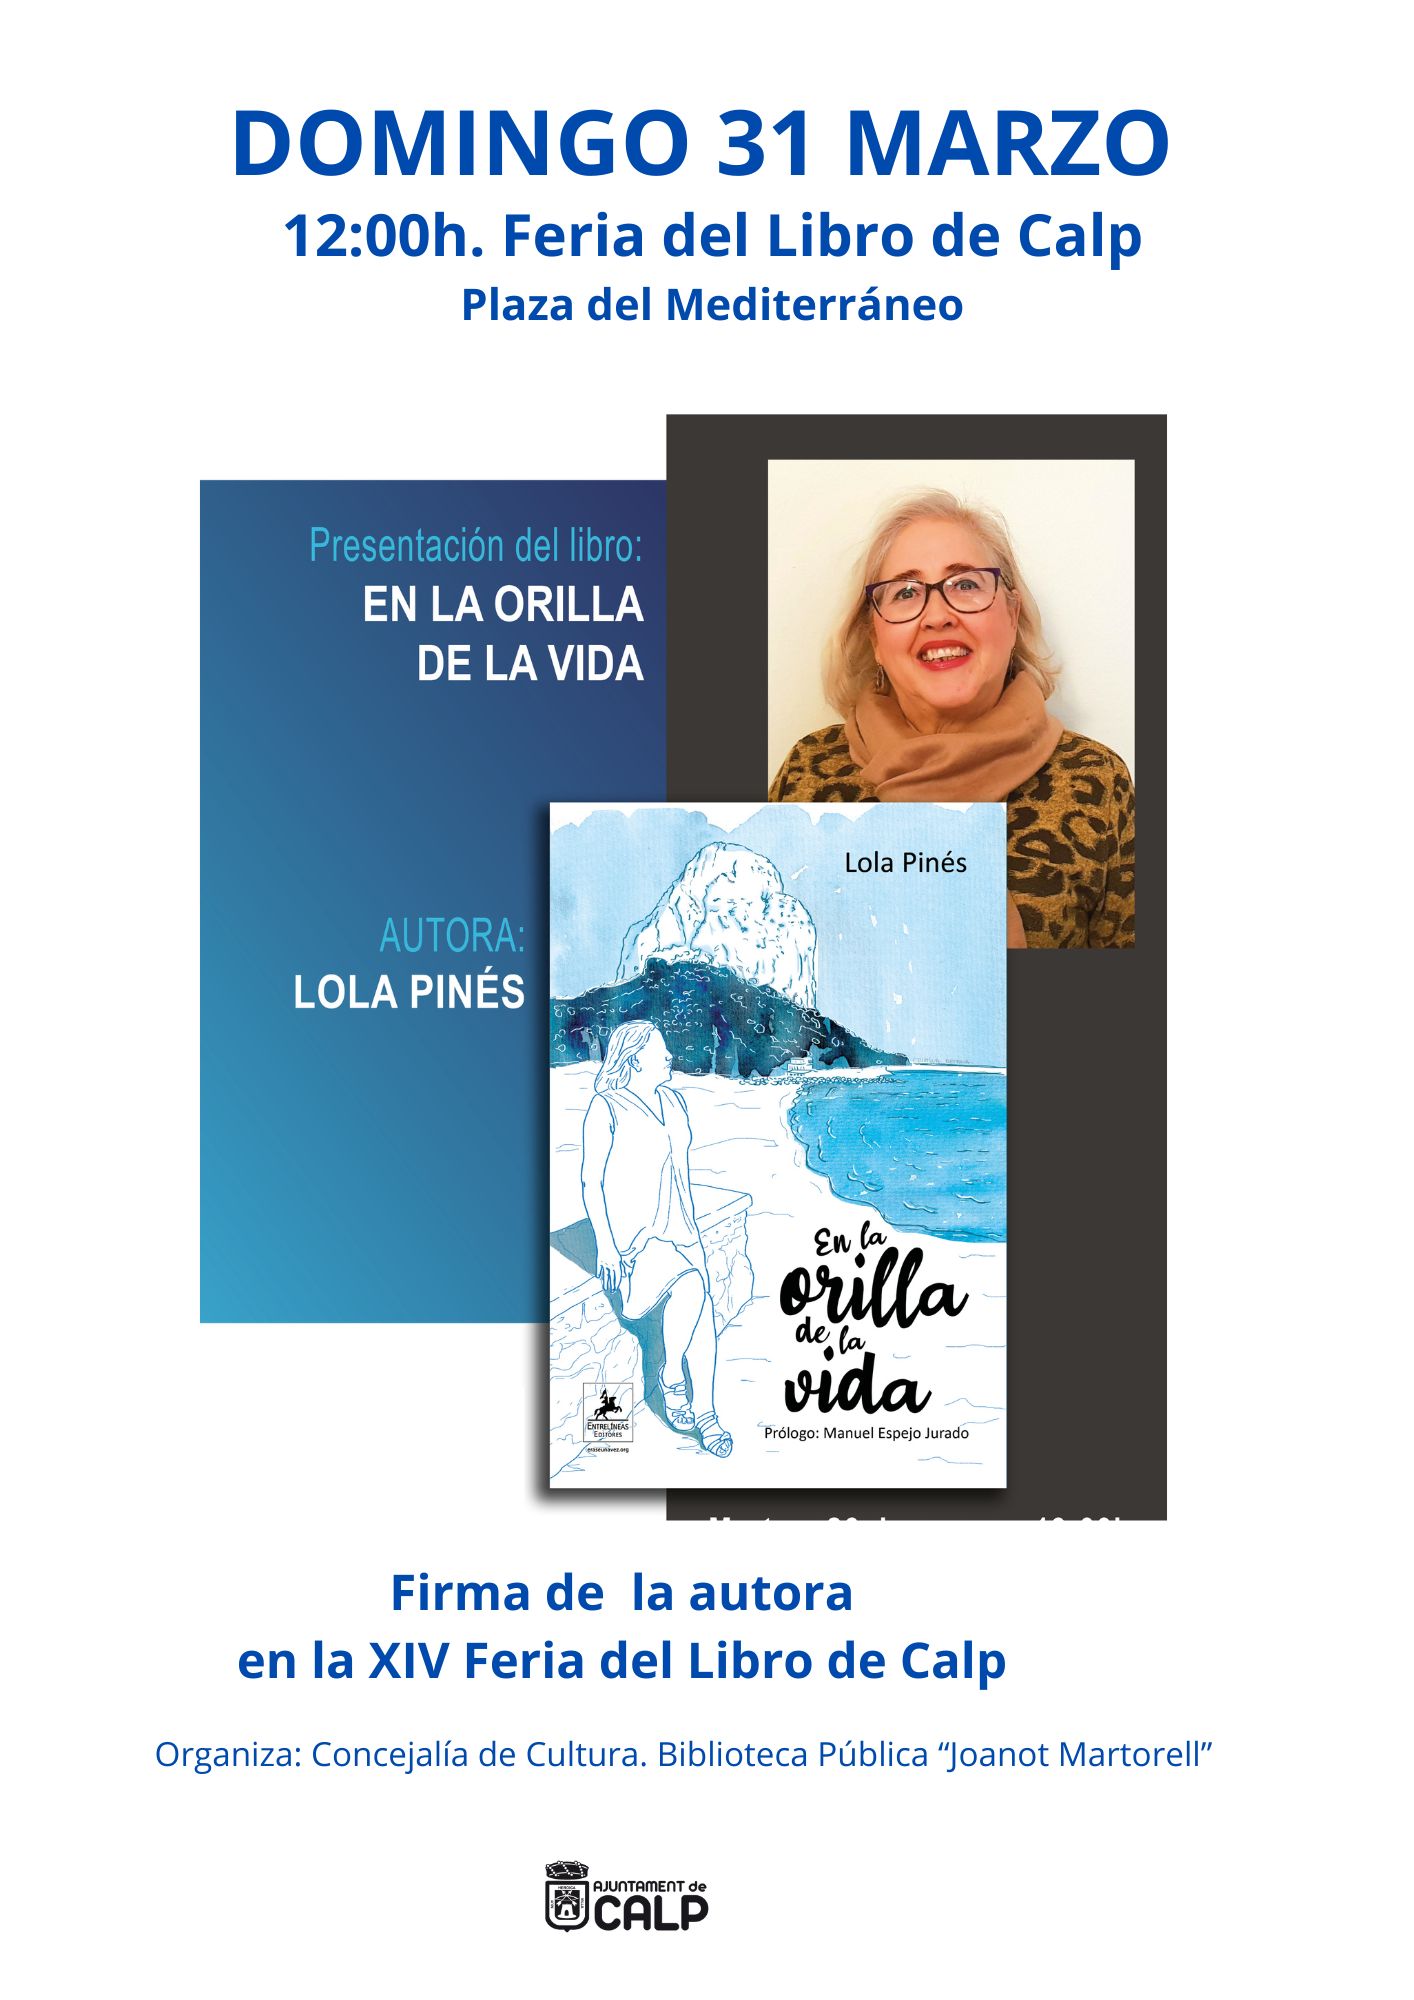 Firma de la autora Lola Pinés "En la orilla de la vida"